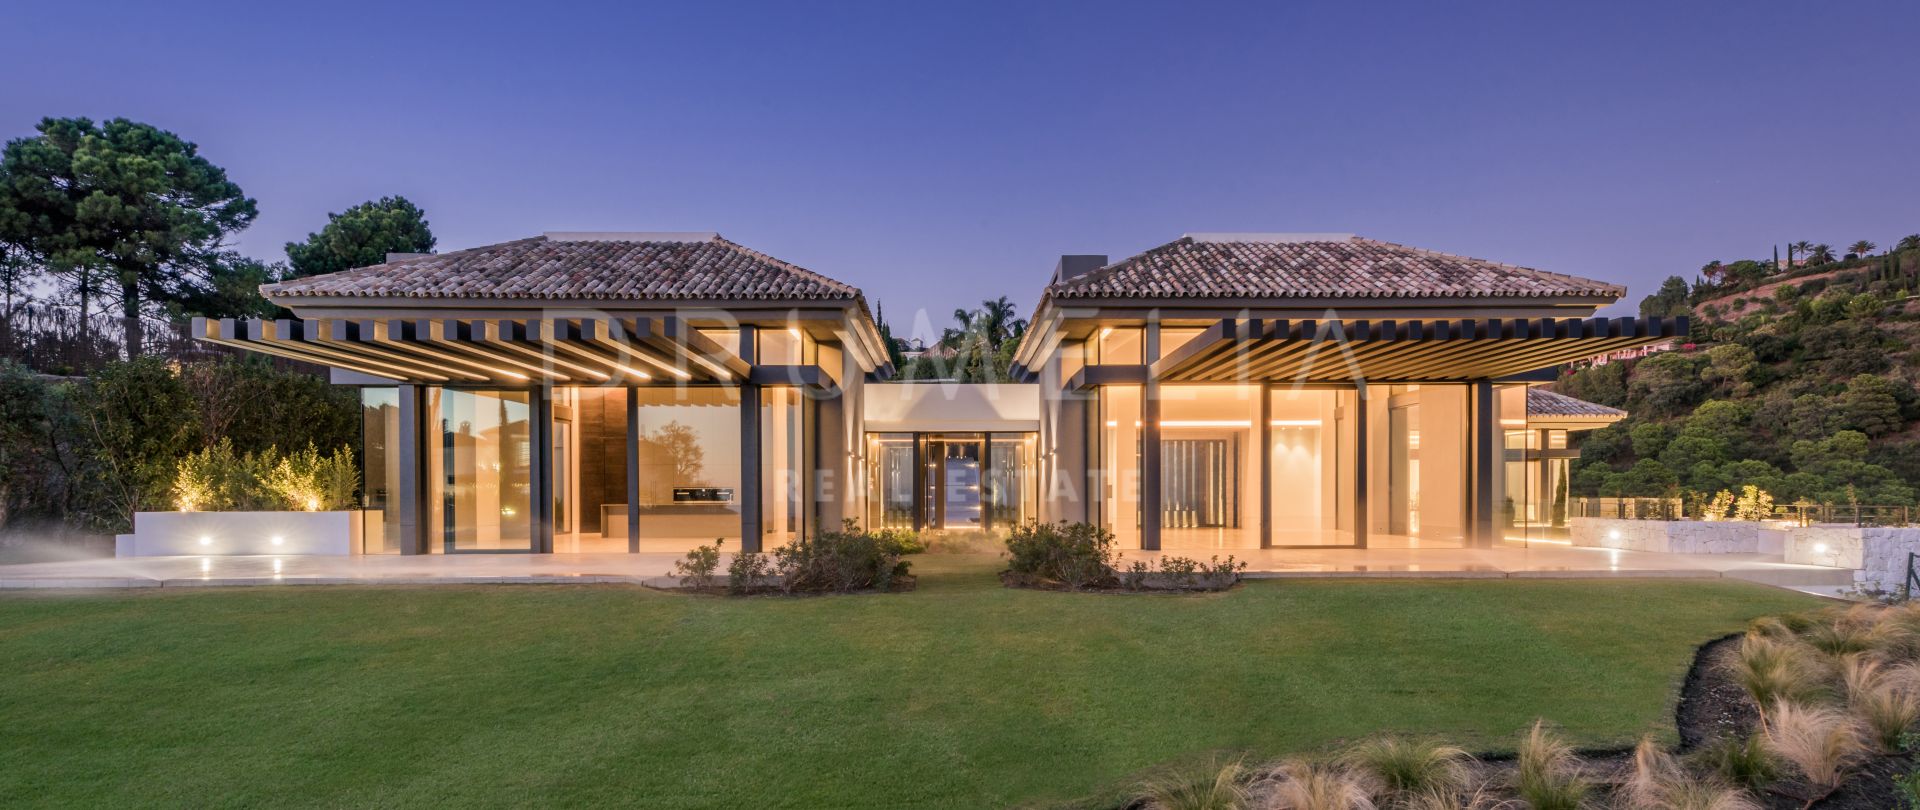 El Cipres - Extraordinär ny modern/samtida villa, La Zagaleta, Benahavis